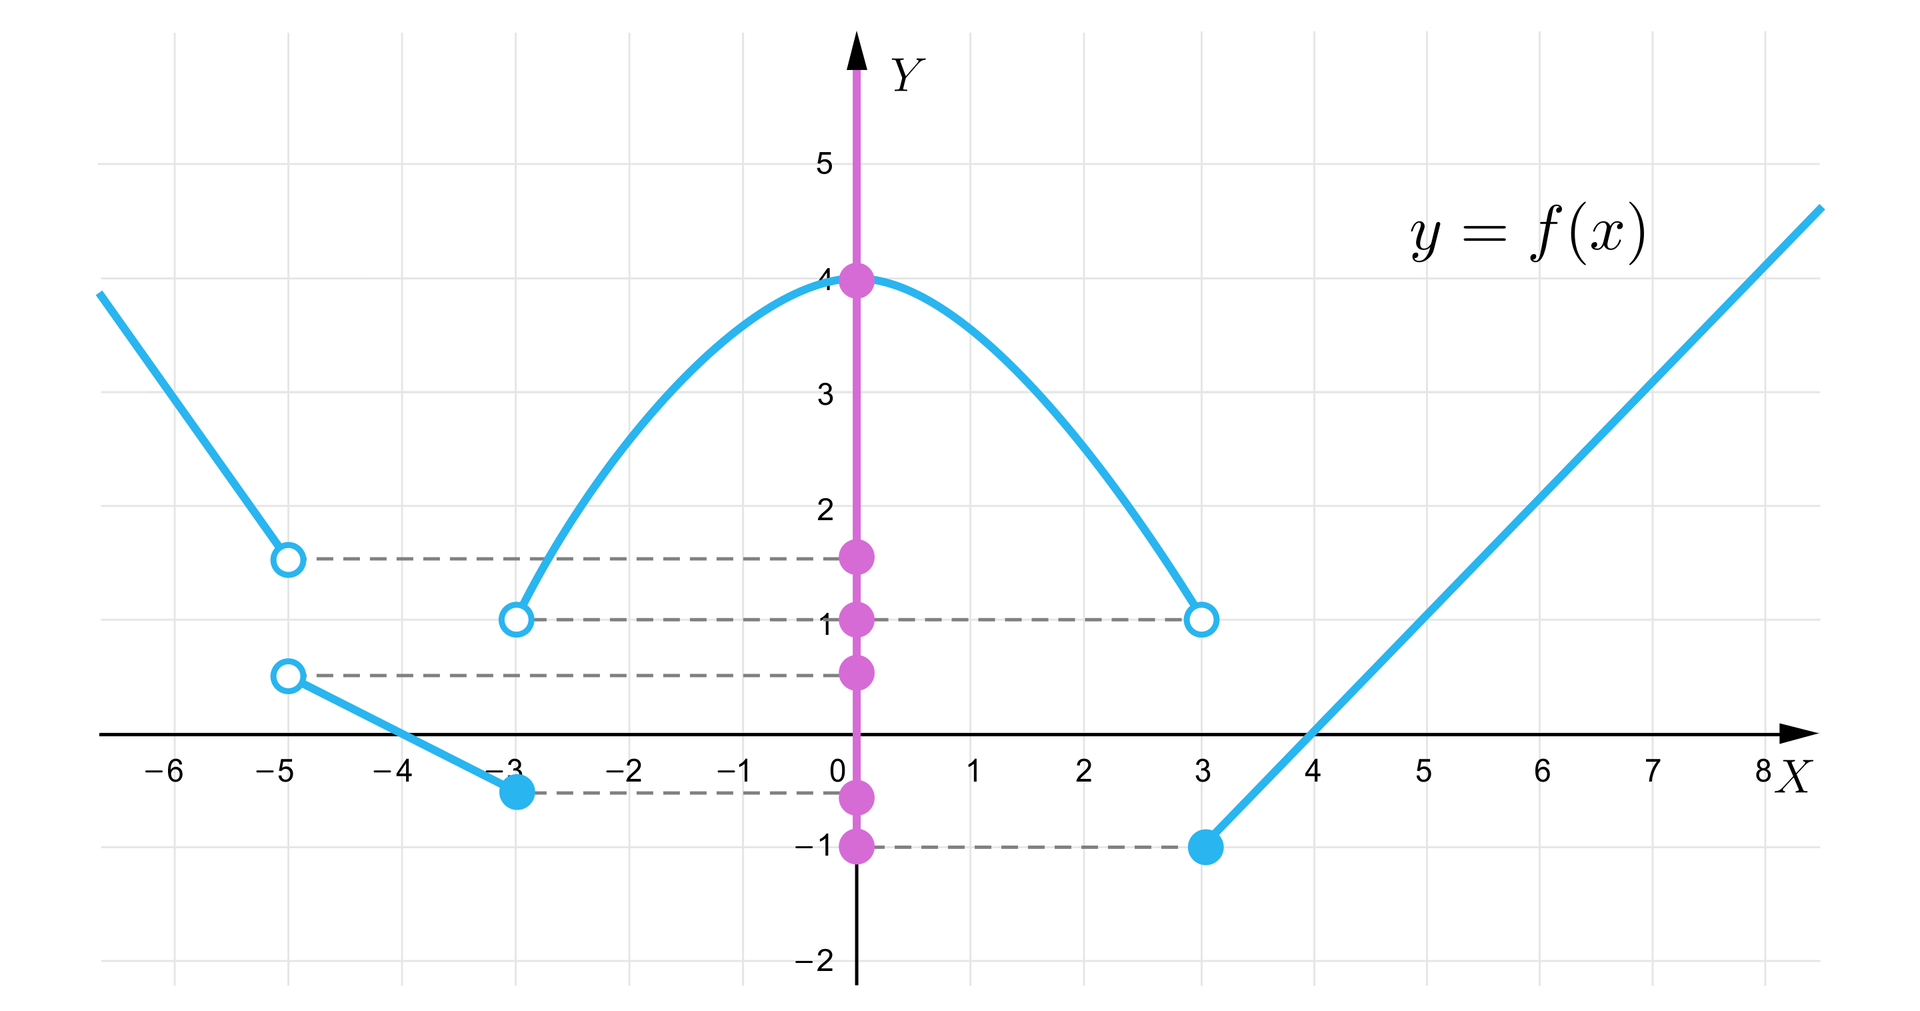 Ilustracja przedstawia wyżej opisany wykres funkcji, przy czym tutaj mamy rzut wykresu na oś Y. Rzut ten jest zbiorem wartości przyjmowanych przez funkcję i przebiega od punktu -1 do plus nieskończoności, przy czym wyróżniono tu też punkty końcowe poszczególnych części wykresu i zrzutowano je na oś pionową. Są to punkty na następujących wysokościach:  -1, -12, 12, 1, 112, 4.